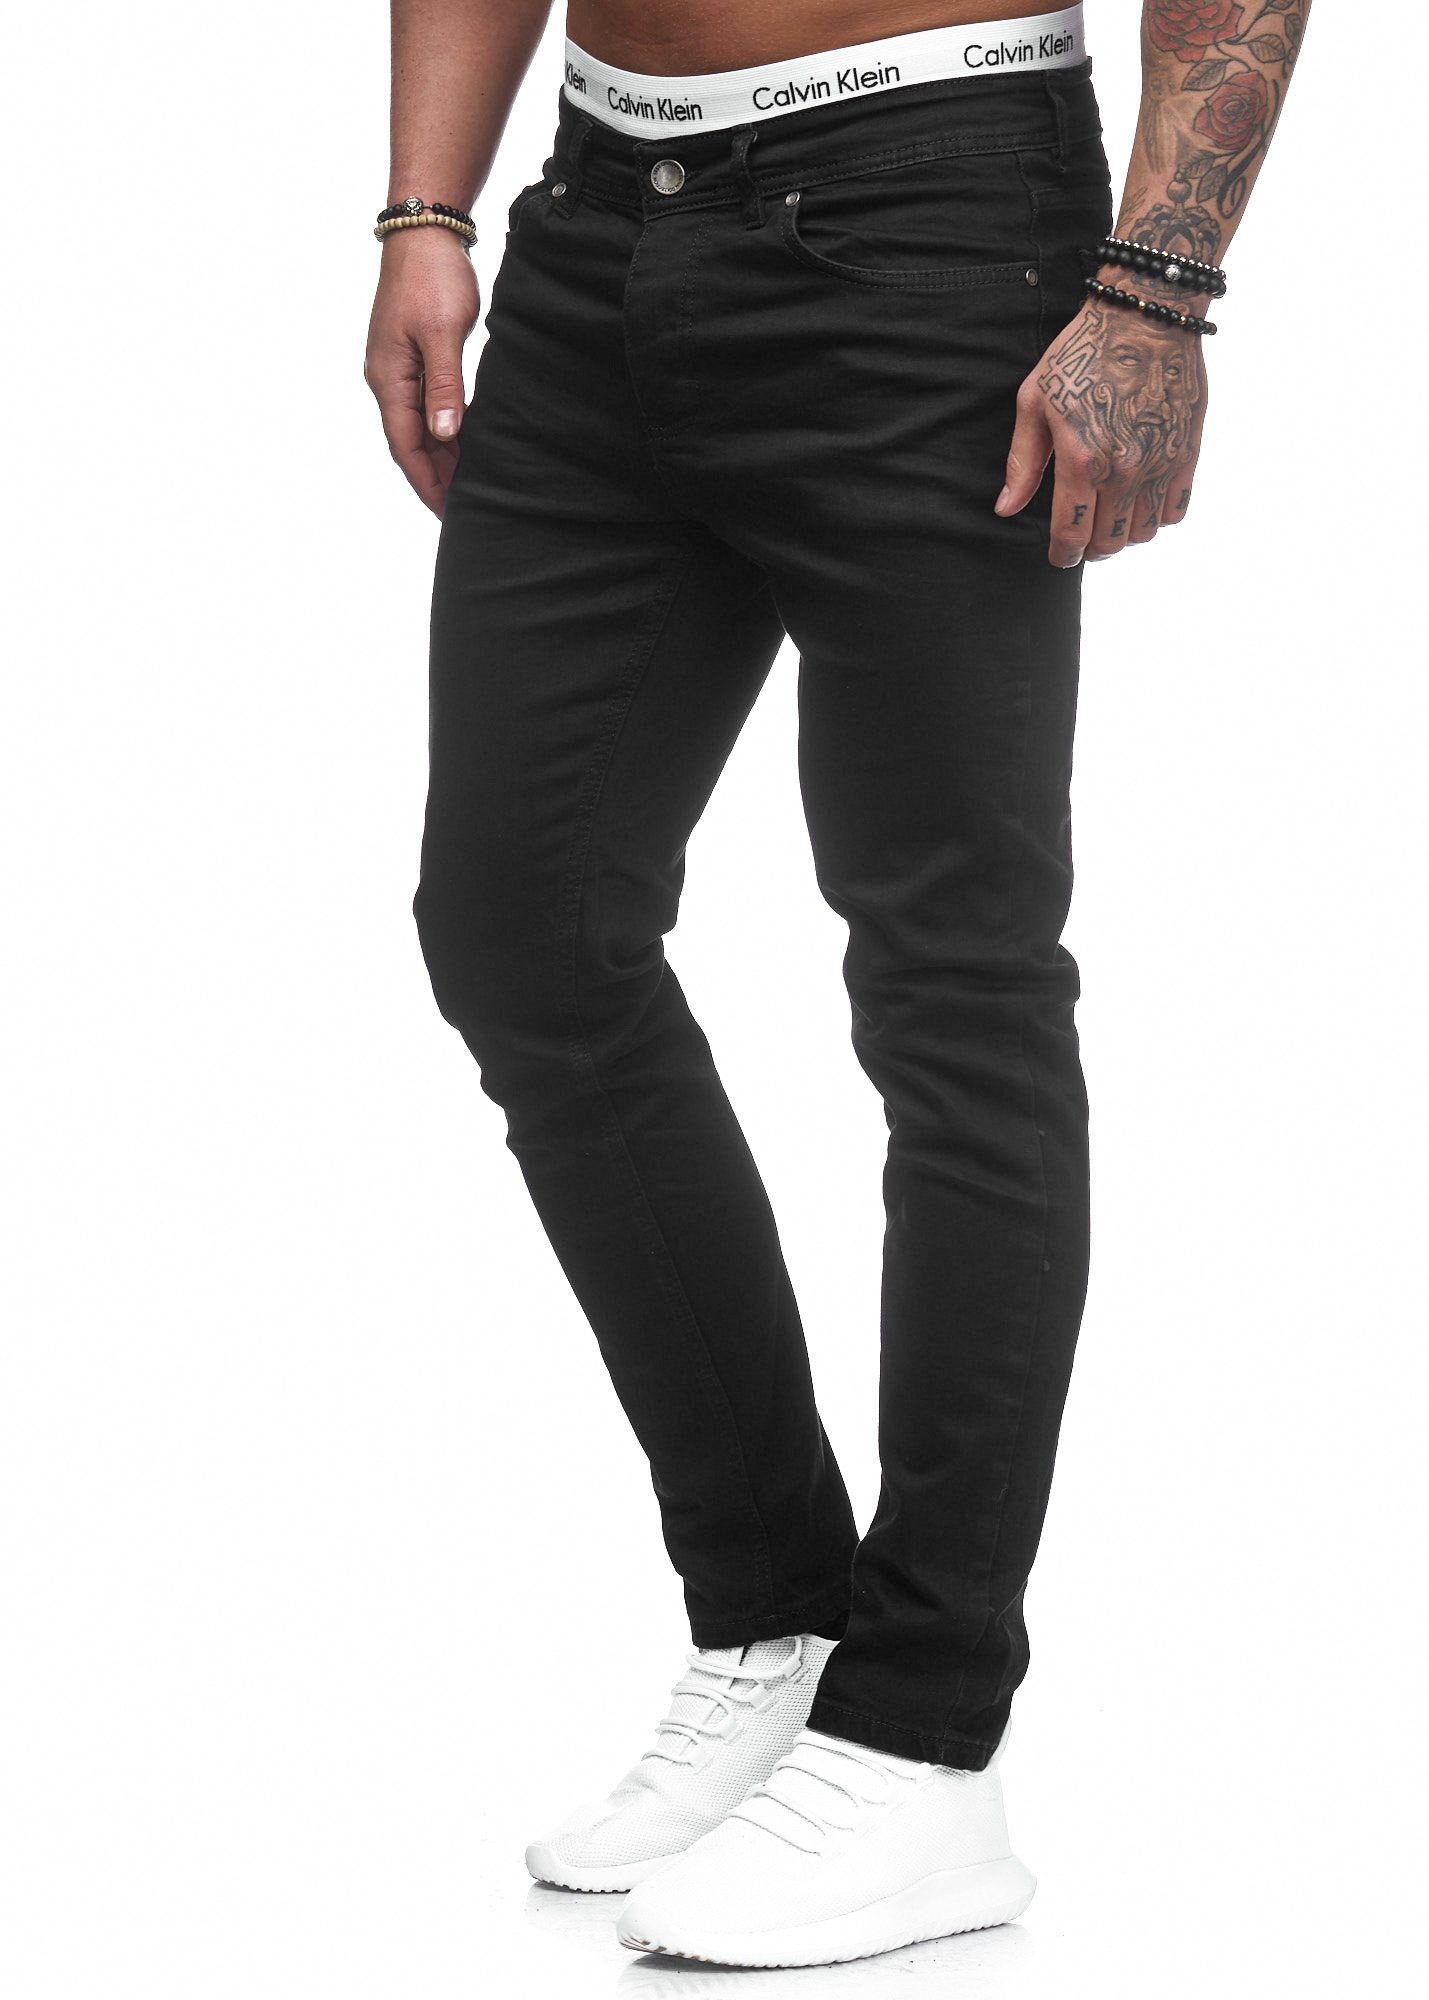 Code47 Slim-fit-Jeans Slim Hose Basic 5078 Fit Designer Jeanshose Schwarz Chino Stretch Jeans Herren